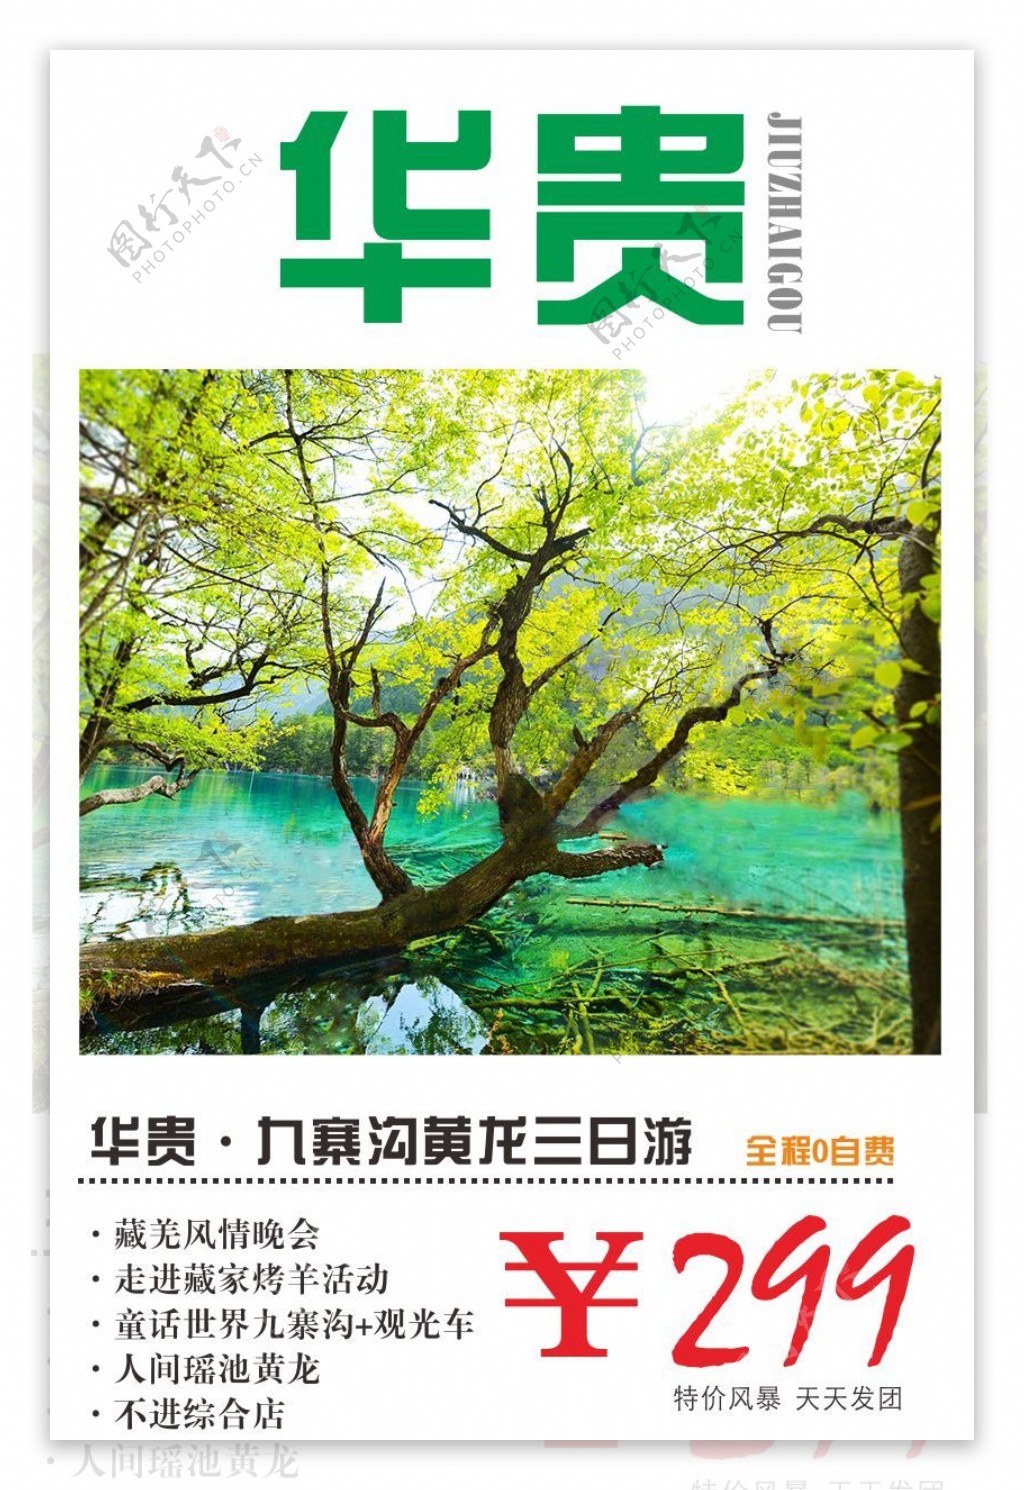 九寨沟旅游宣传海报原创设计高清CDR